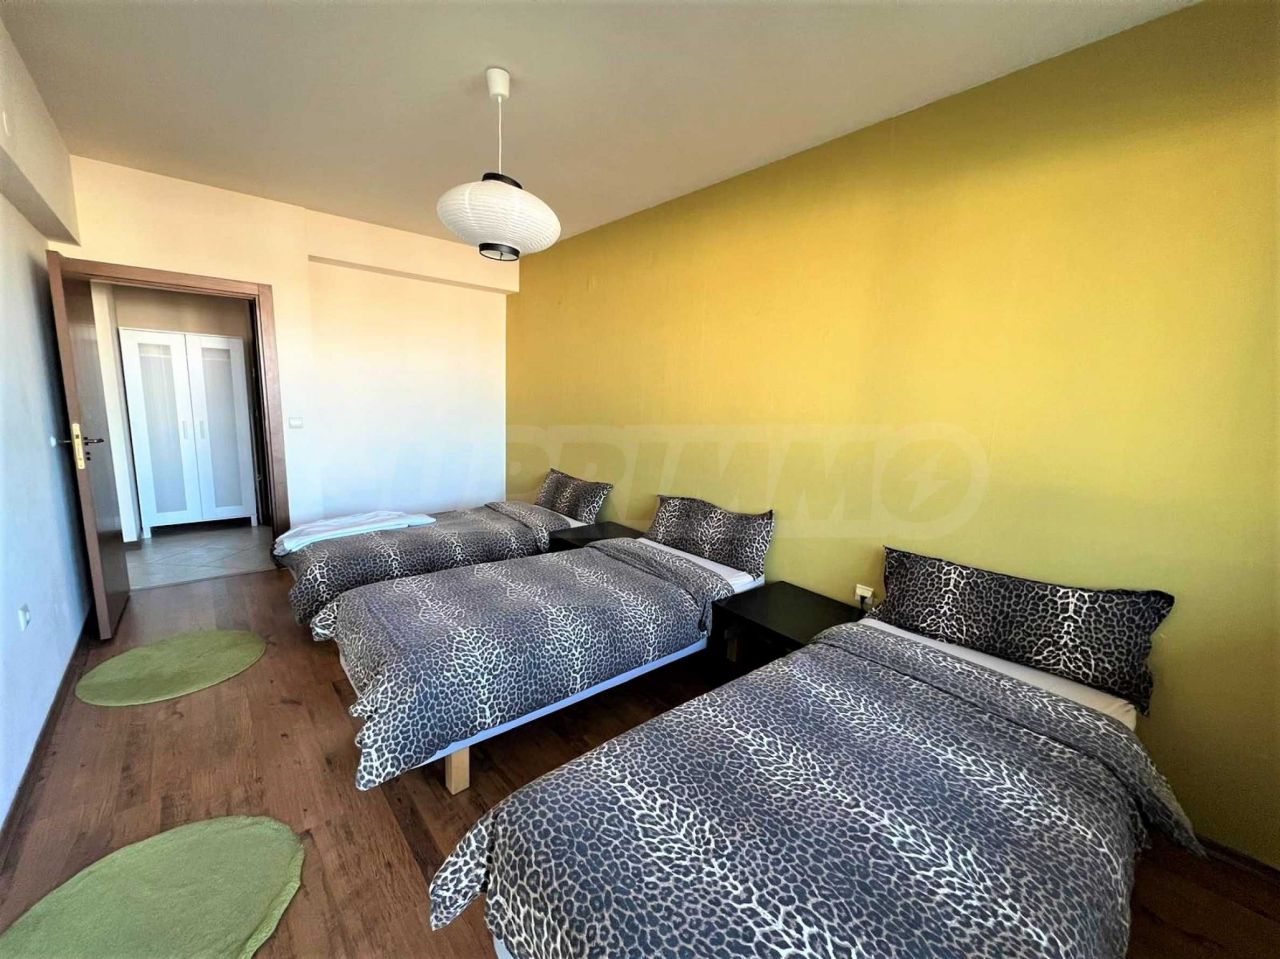 Apartment in Bansko, Bulgaria, 80.24 sq.m - picture 1